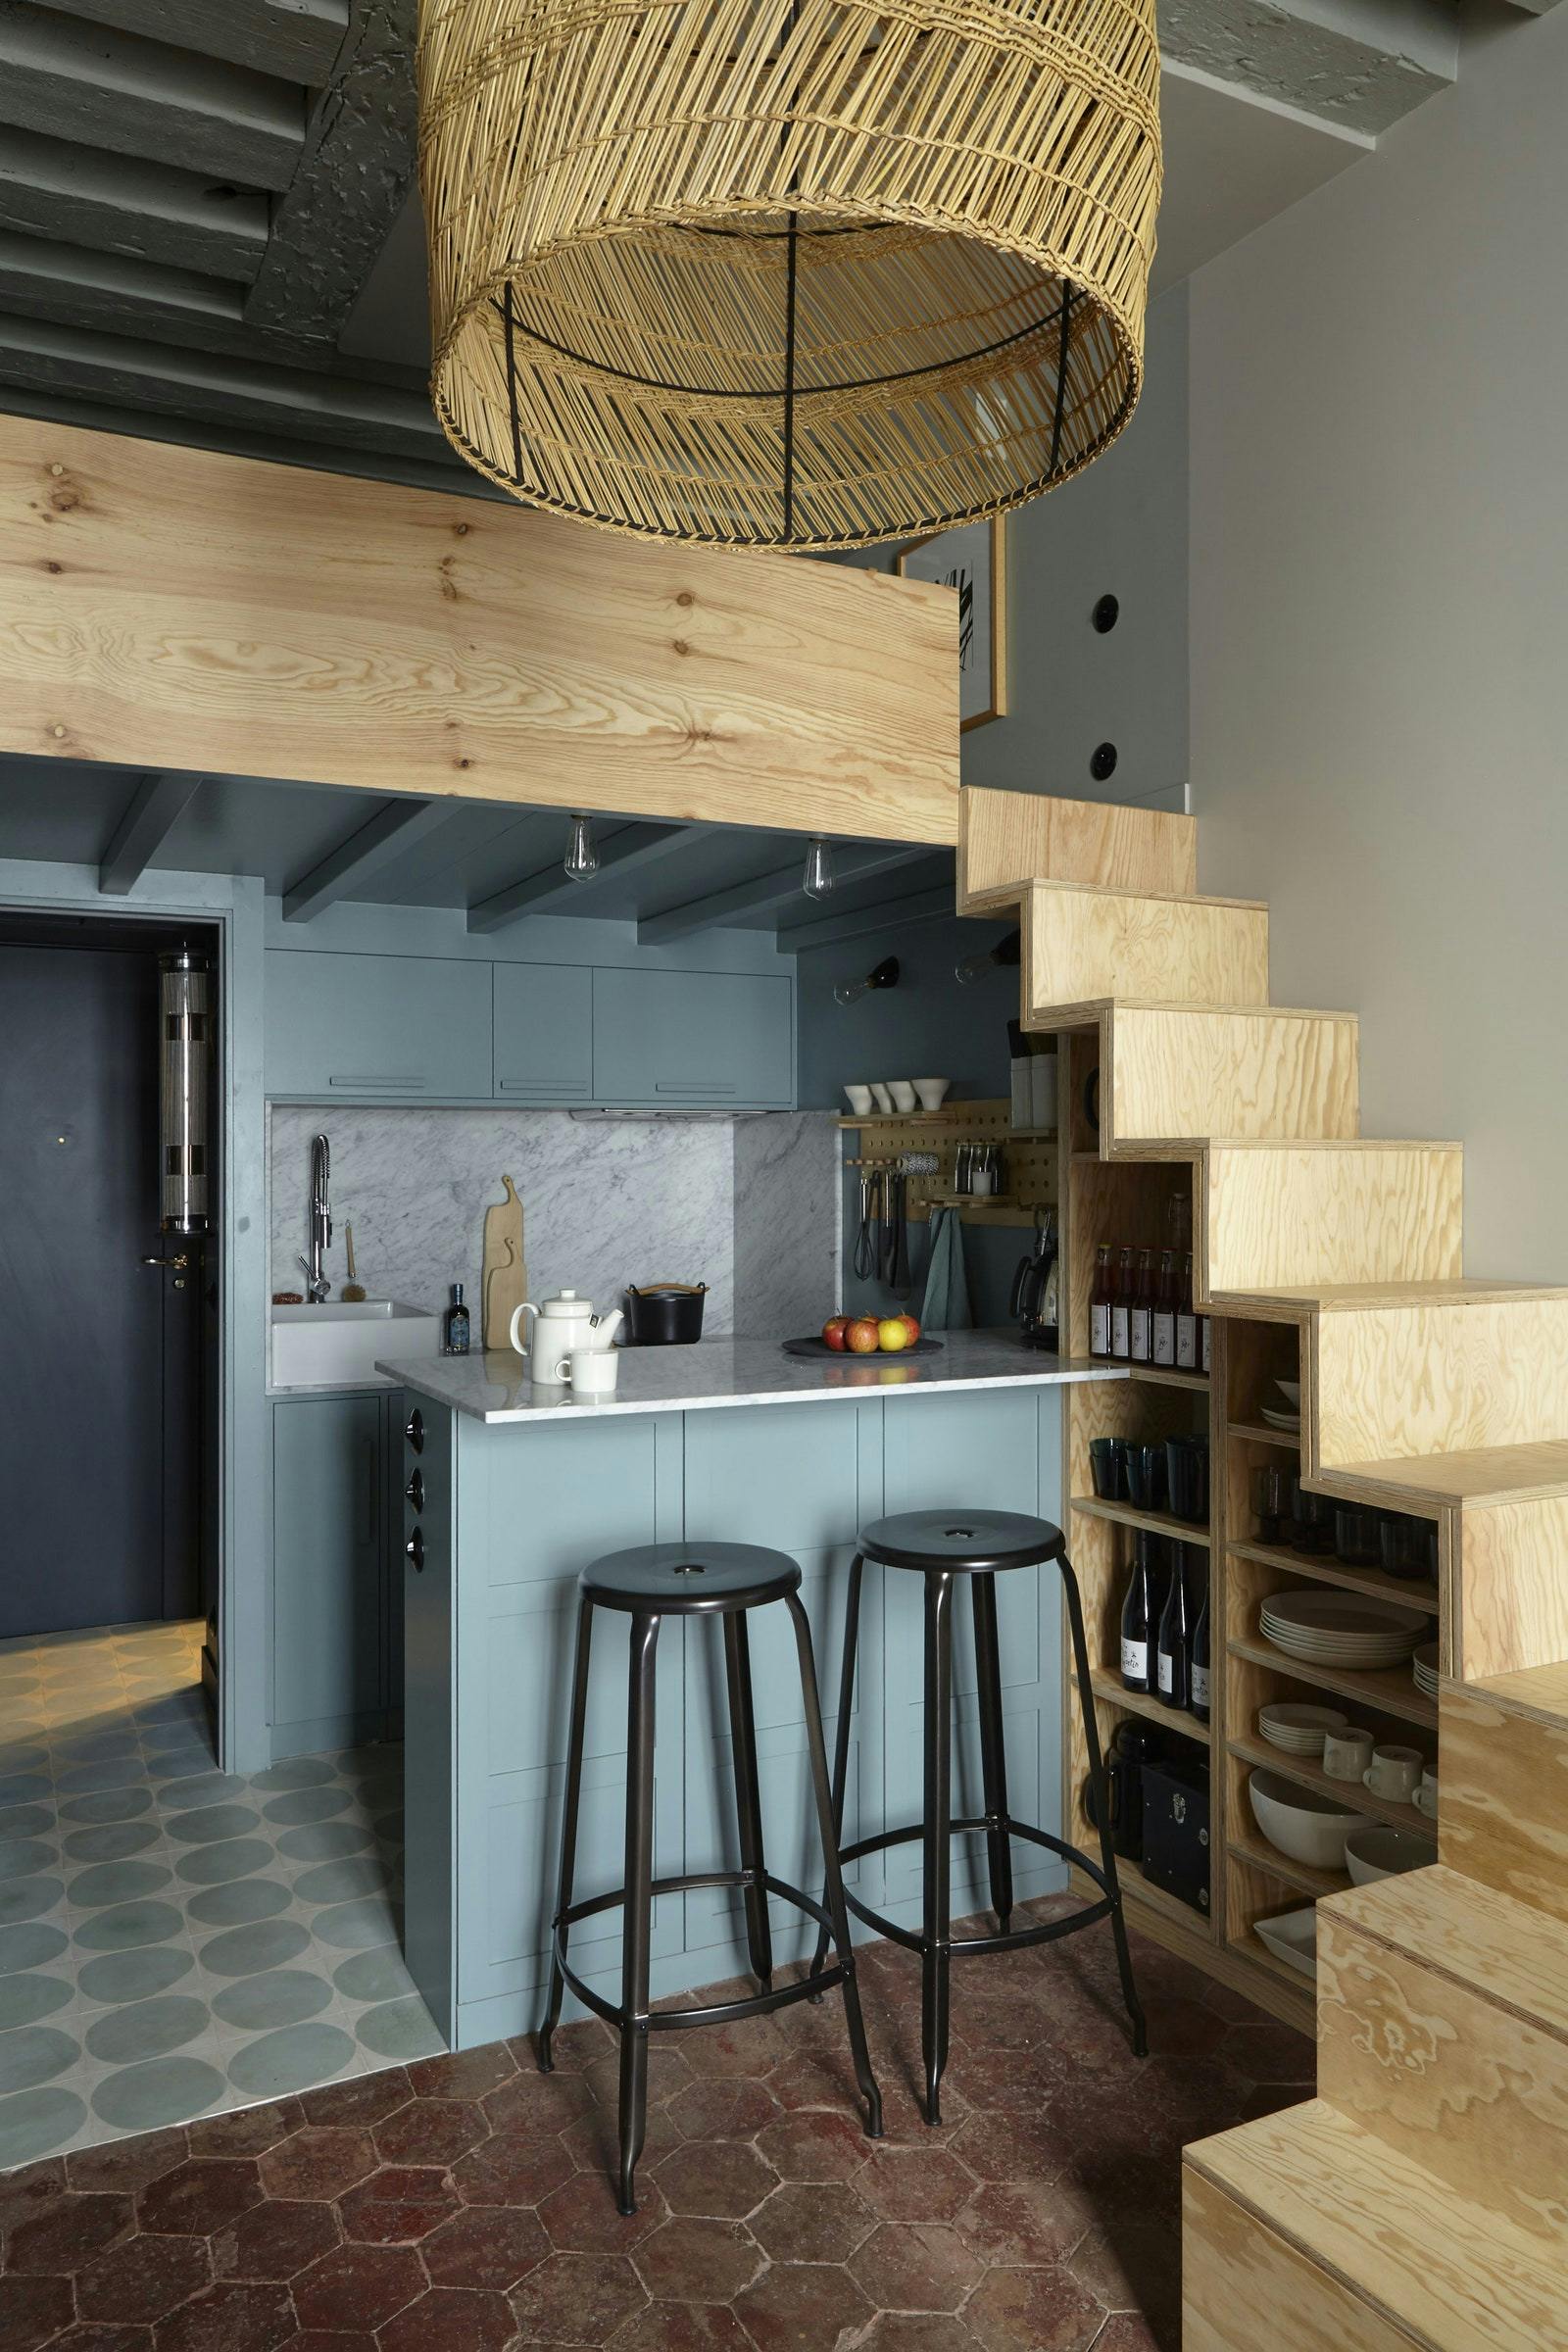 cuisine dans un petit duplex loft avec escalier ouvert menant au loft